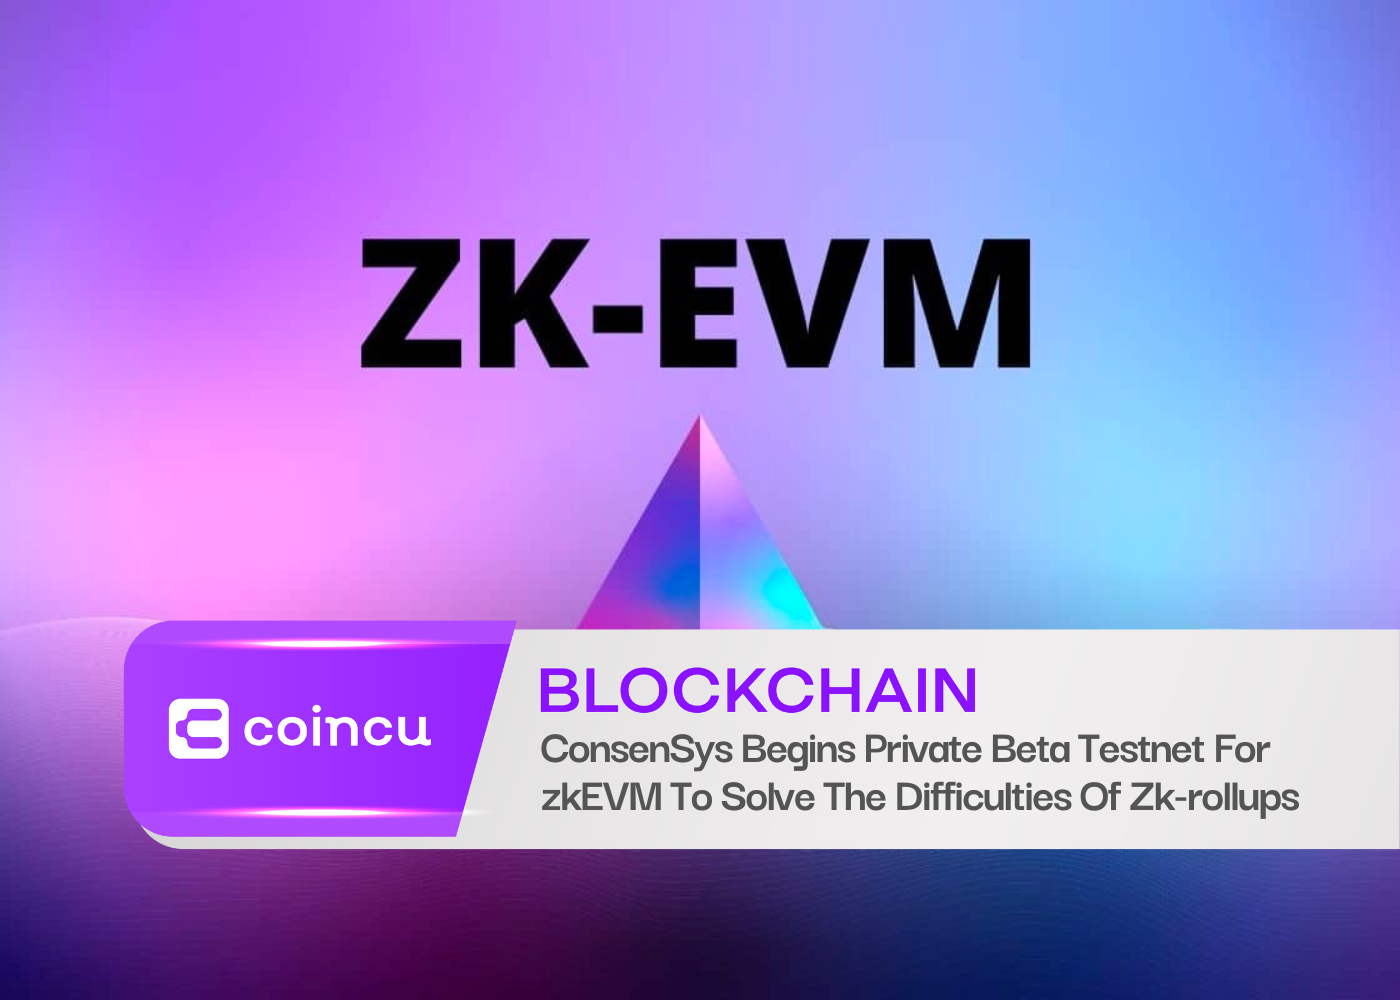 ConsenSys lance un réseau de test bêta privé pour zkEVM afin de résoudre les difficultés des Zk-rollups